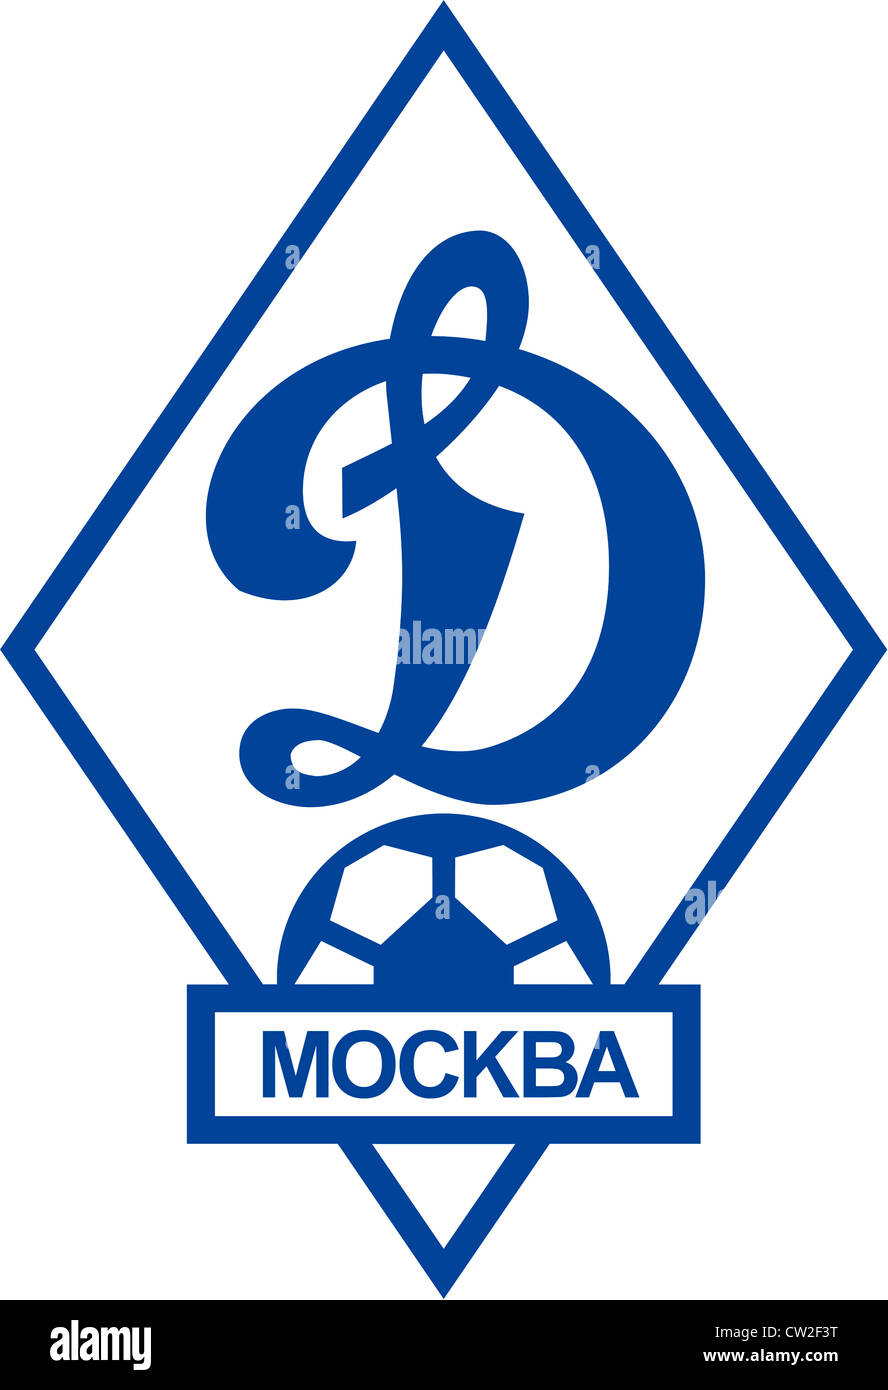 Logo de fédération de football club Dynamo de Moscou. Banque D'Images